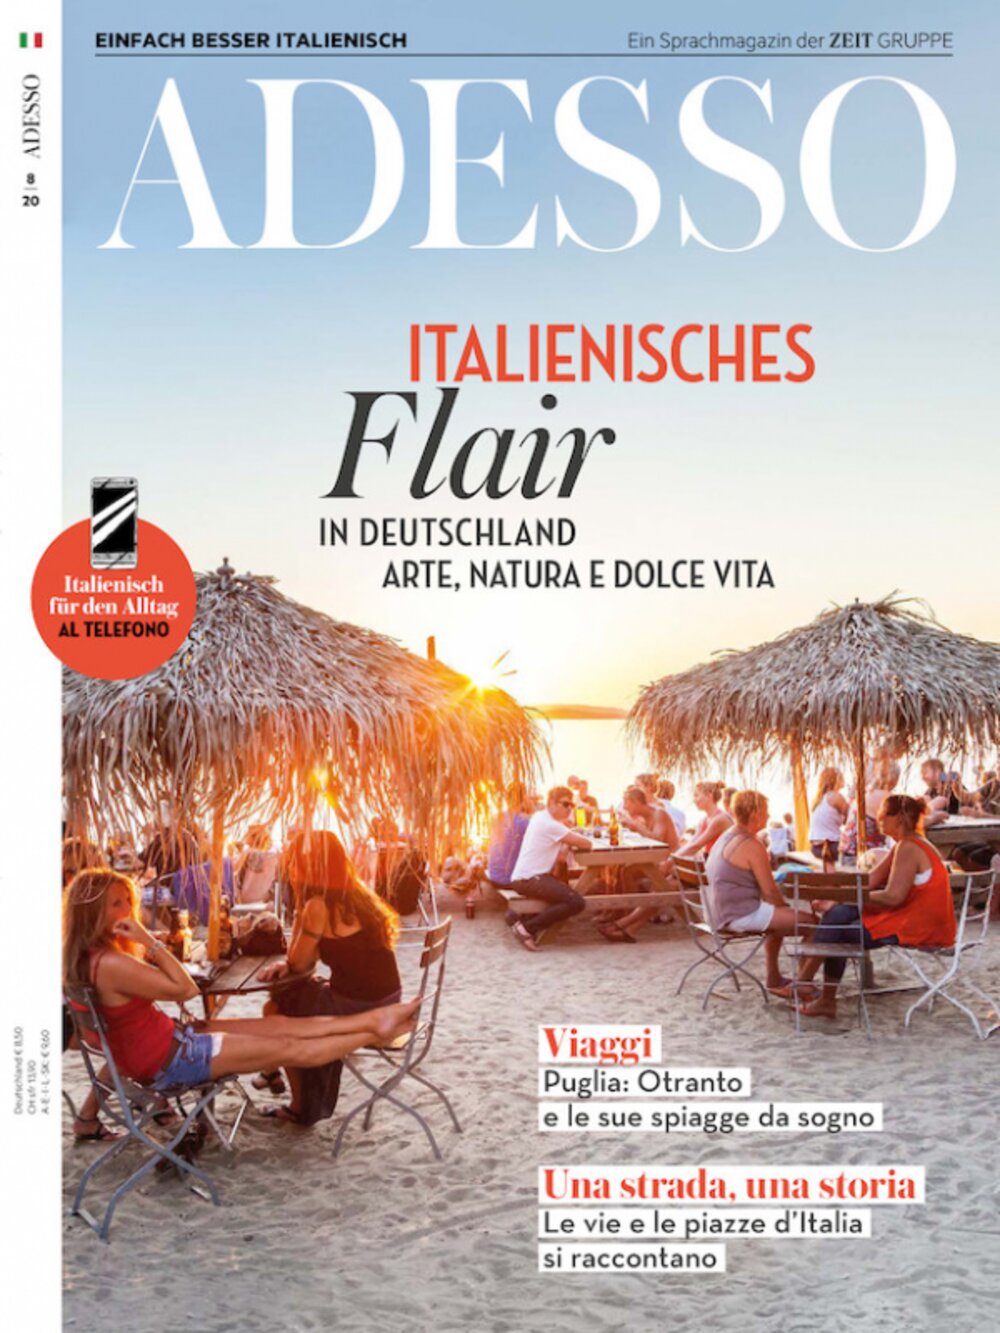 ADESSO eMagazine 08/2020